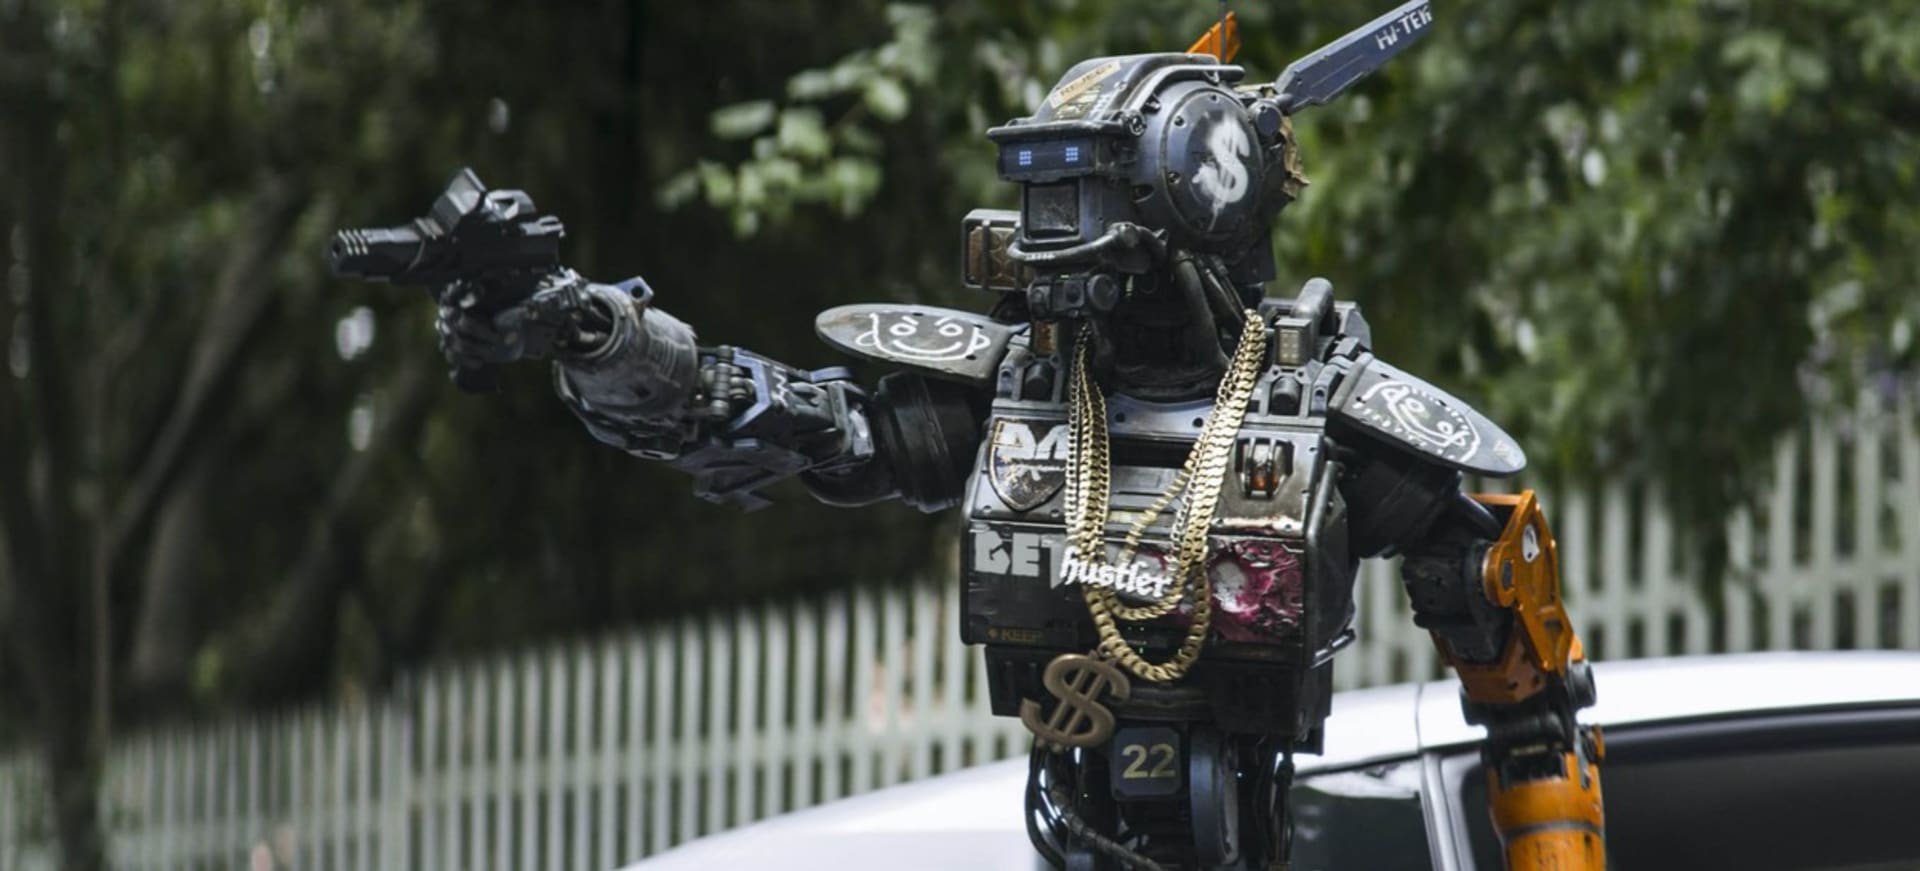 Hrdinou filmu Chappie je stejnojmenný robot, který je odcizen z mechanických policejních sborů a přeprogramován. Díky tomu získá schopnost samostatně přemýšlet a mít city.